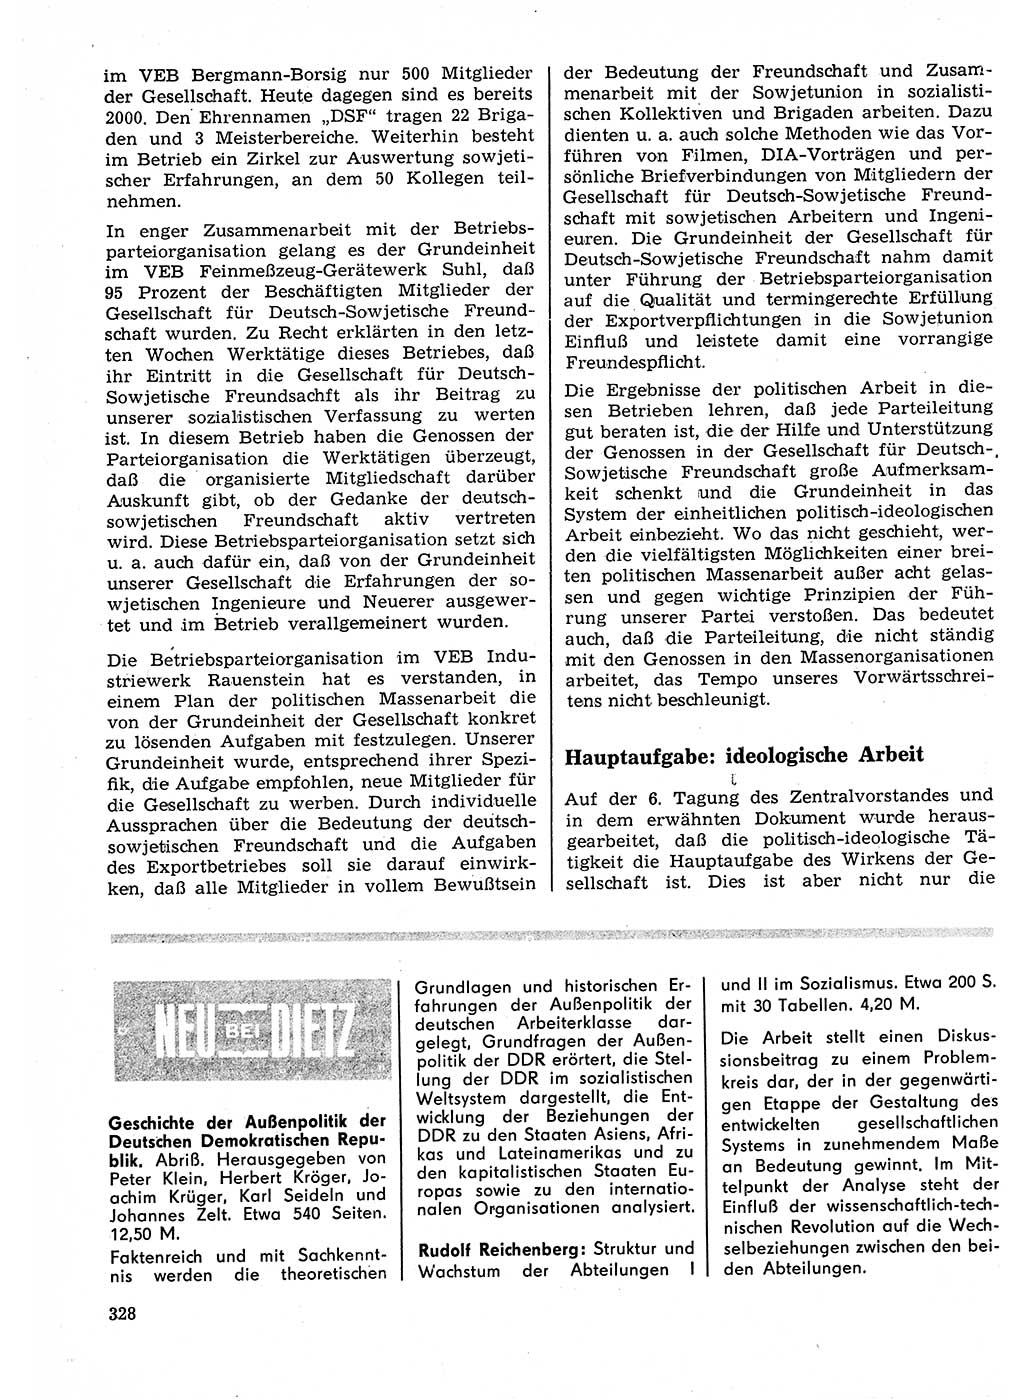 Neuer Weg (NW), Organ des Zentralkomitees (ZK) der SED (Sozialistische Einheitspartei Deutschlands) für Fragen des Parteilebens, 23. Jahrgang [Deutsche Demokratische Republik (DDR)] 1968, Seite 328 (NW ZK SED DDR 1968, S. 328)